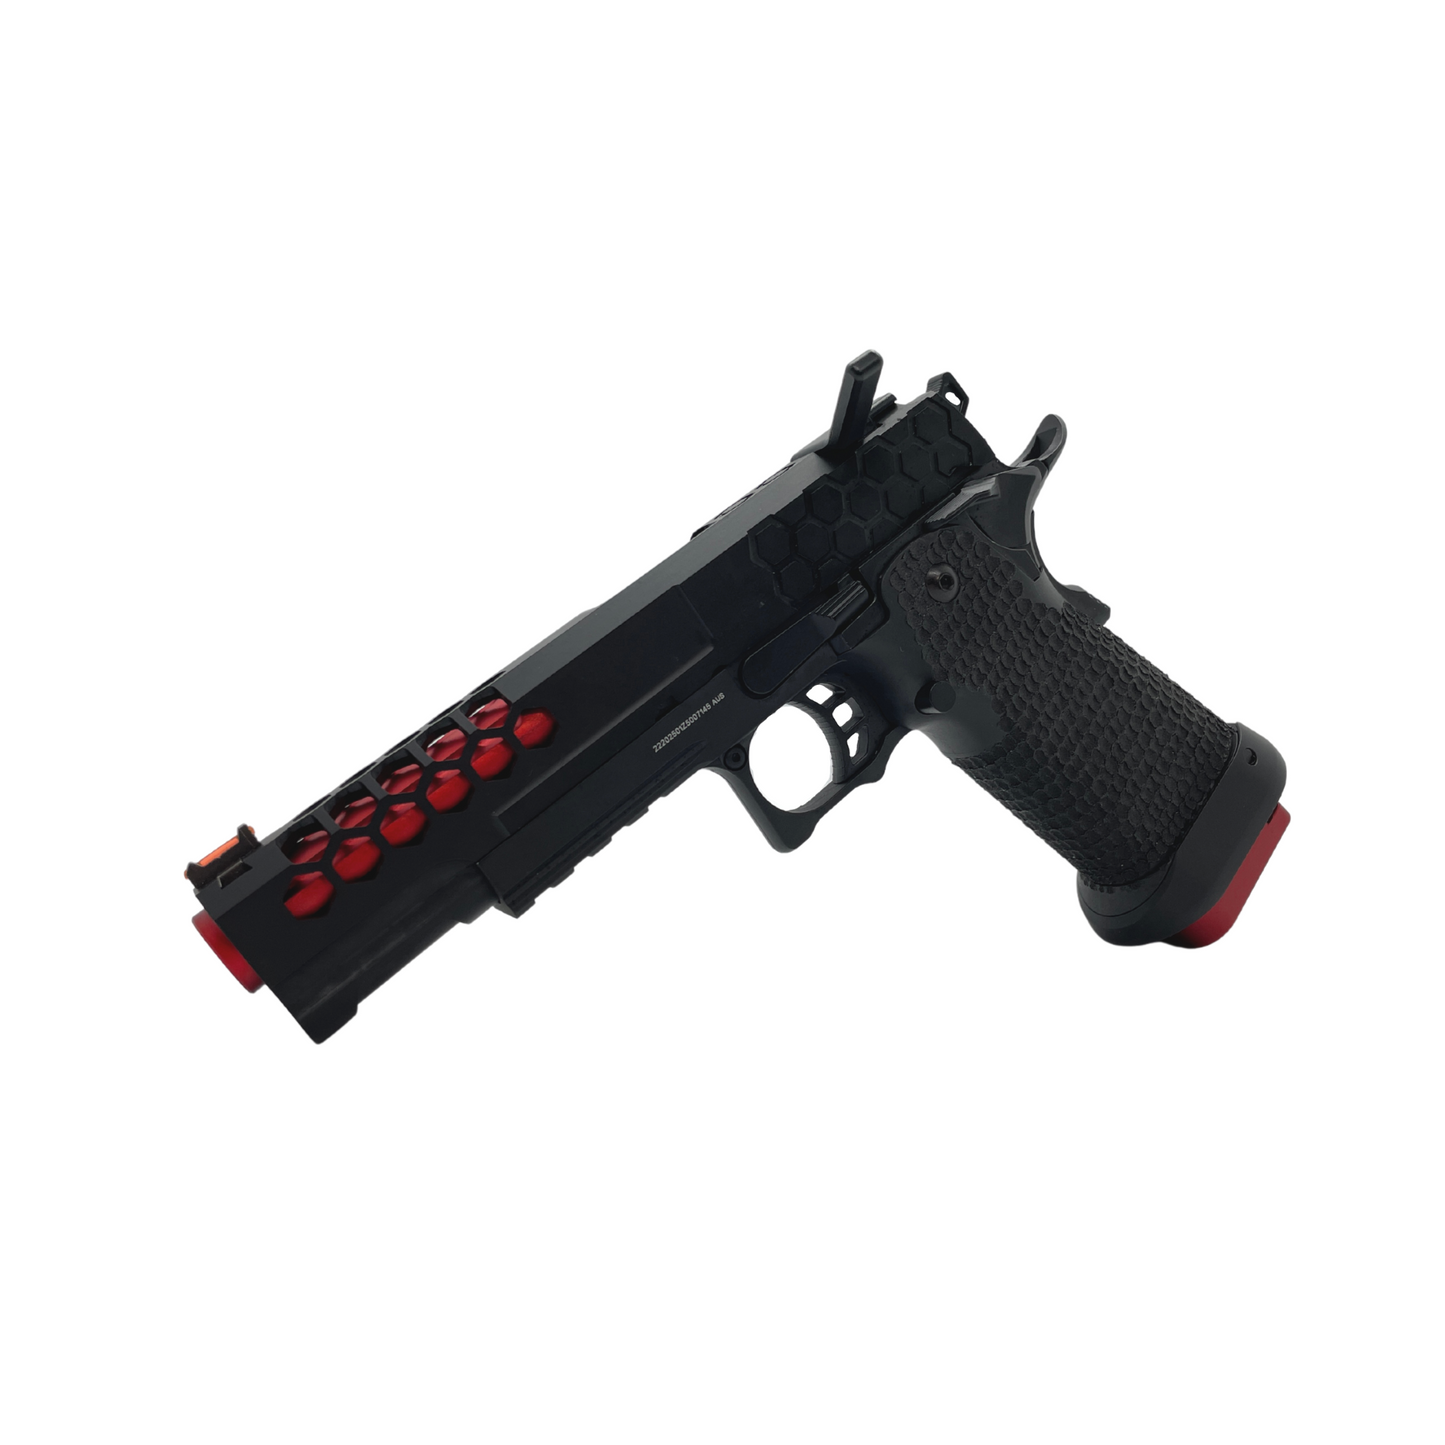 "Trippie Red" G/E Hi-Capa 5.1 Gas Pistol - Gel Blaster